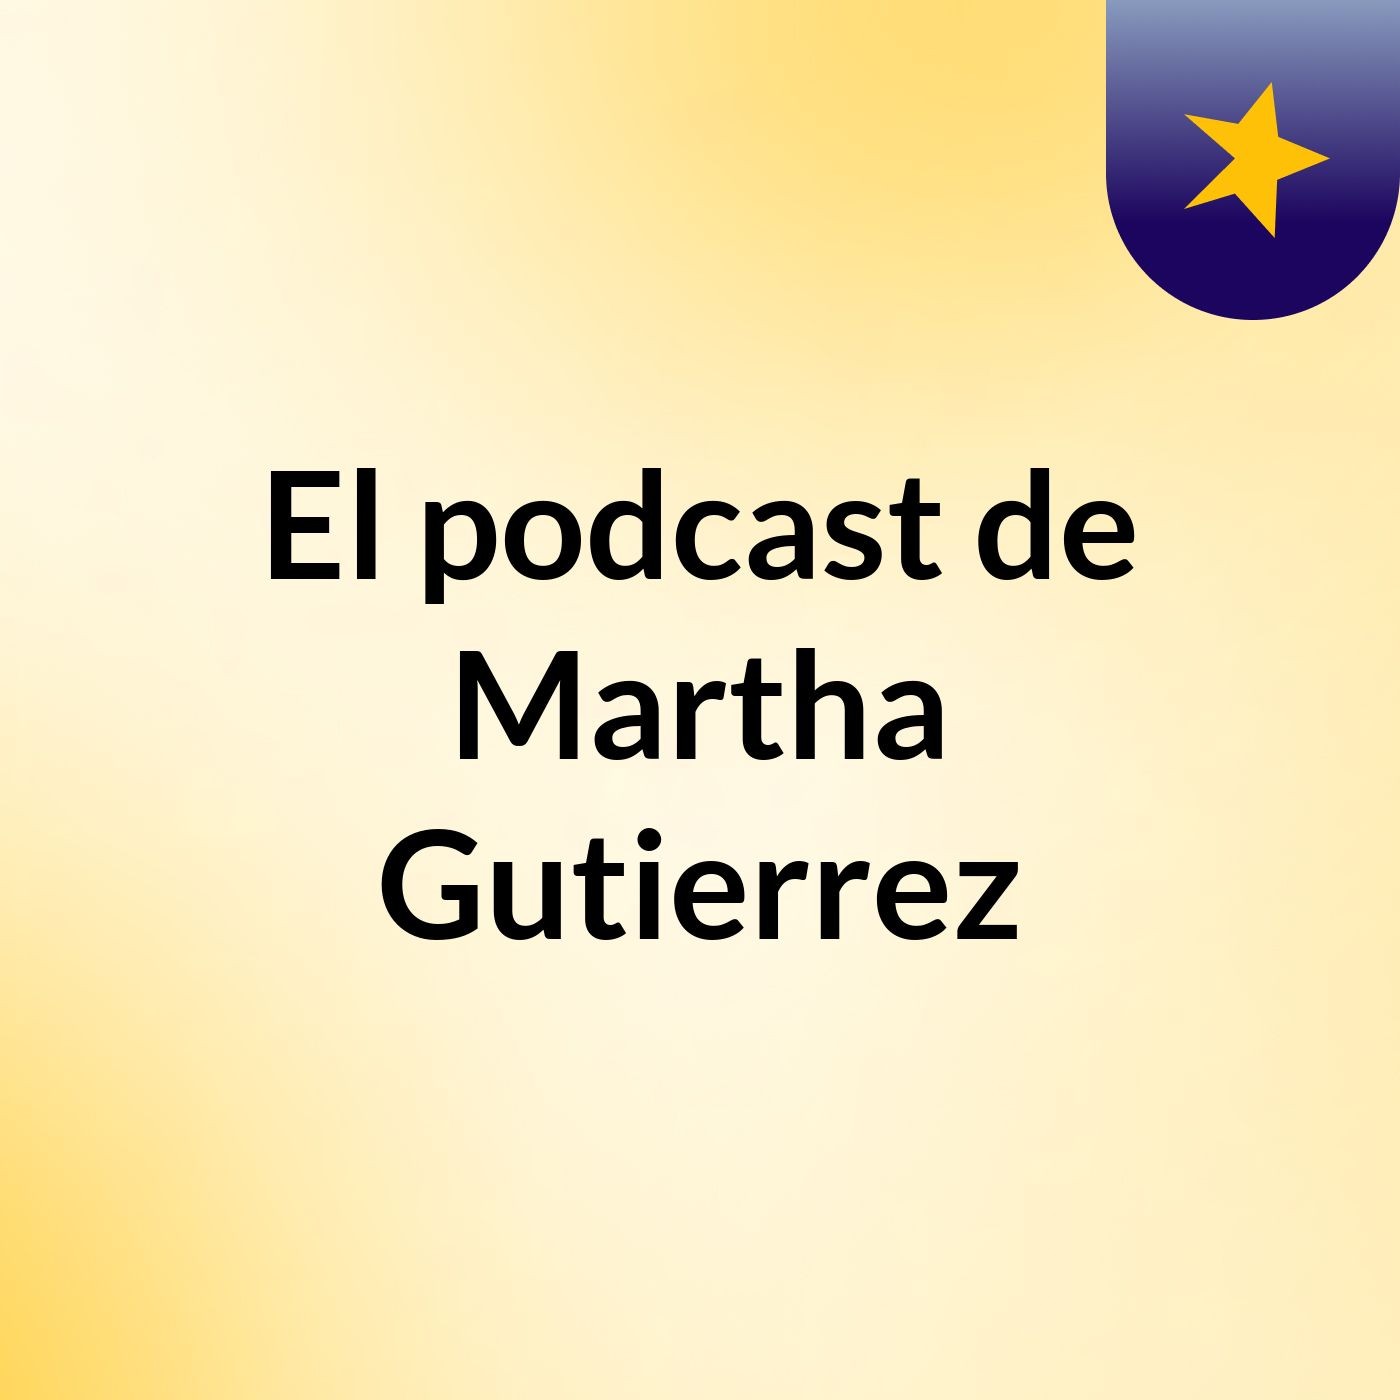 El podcast de Martha Gutierrez